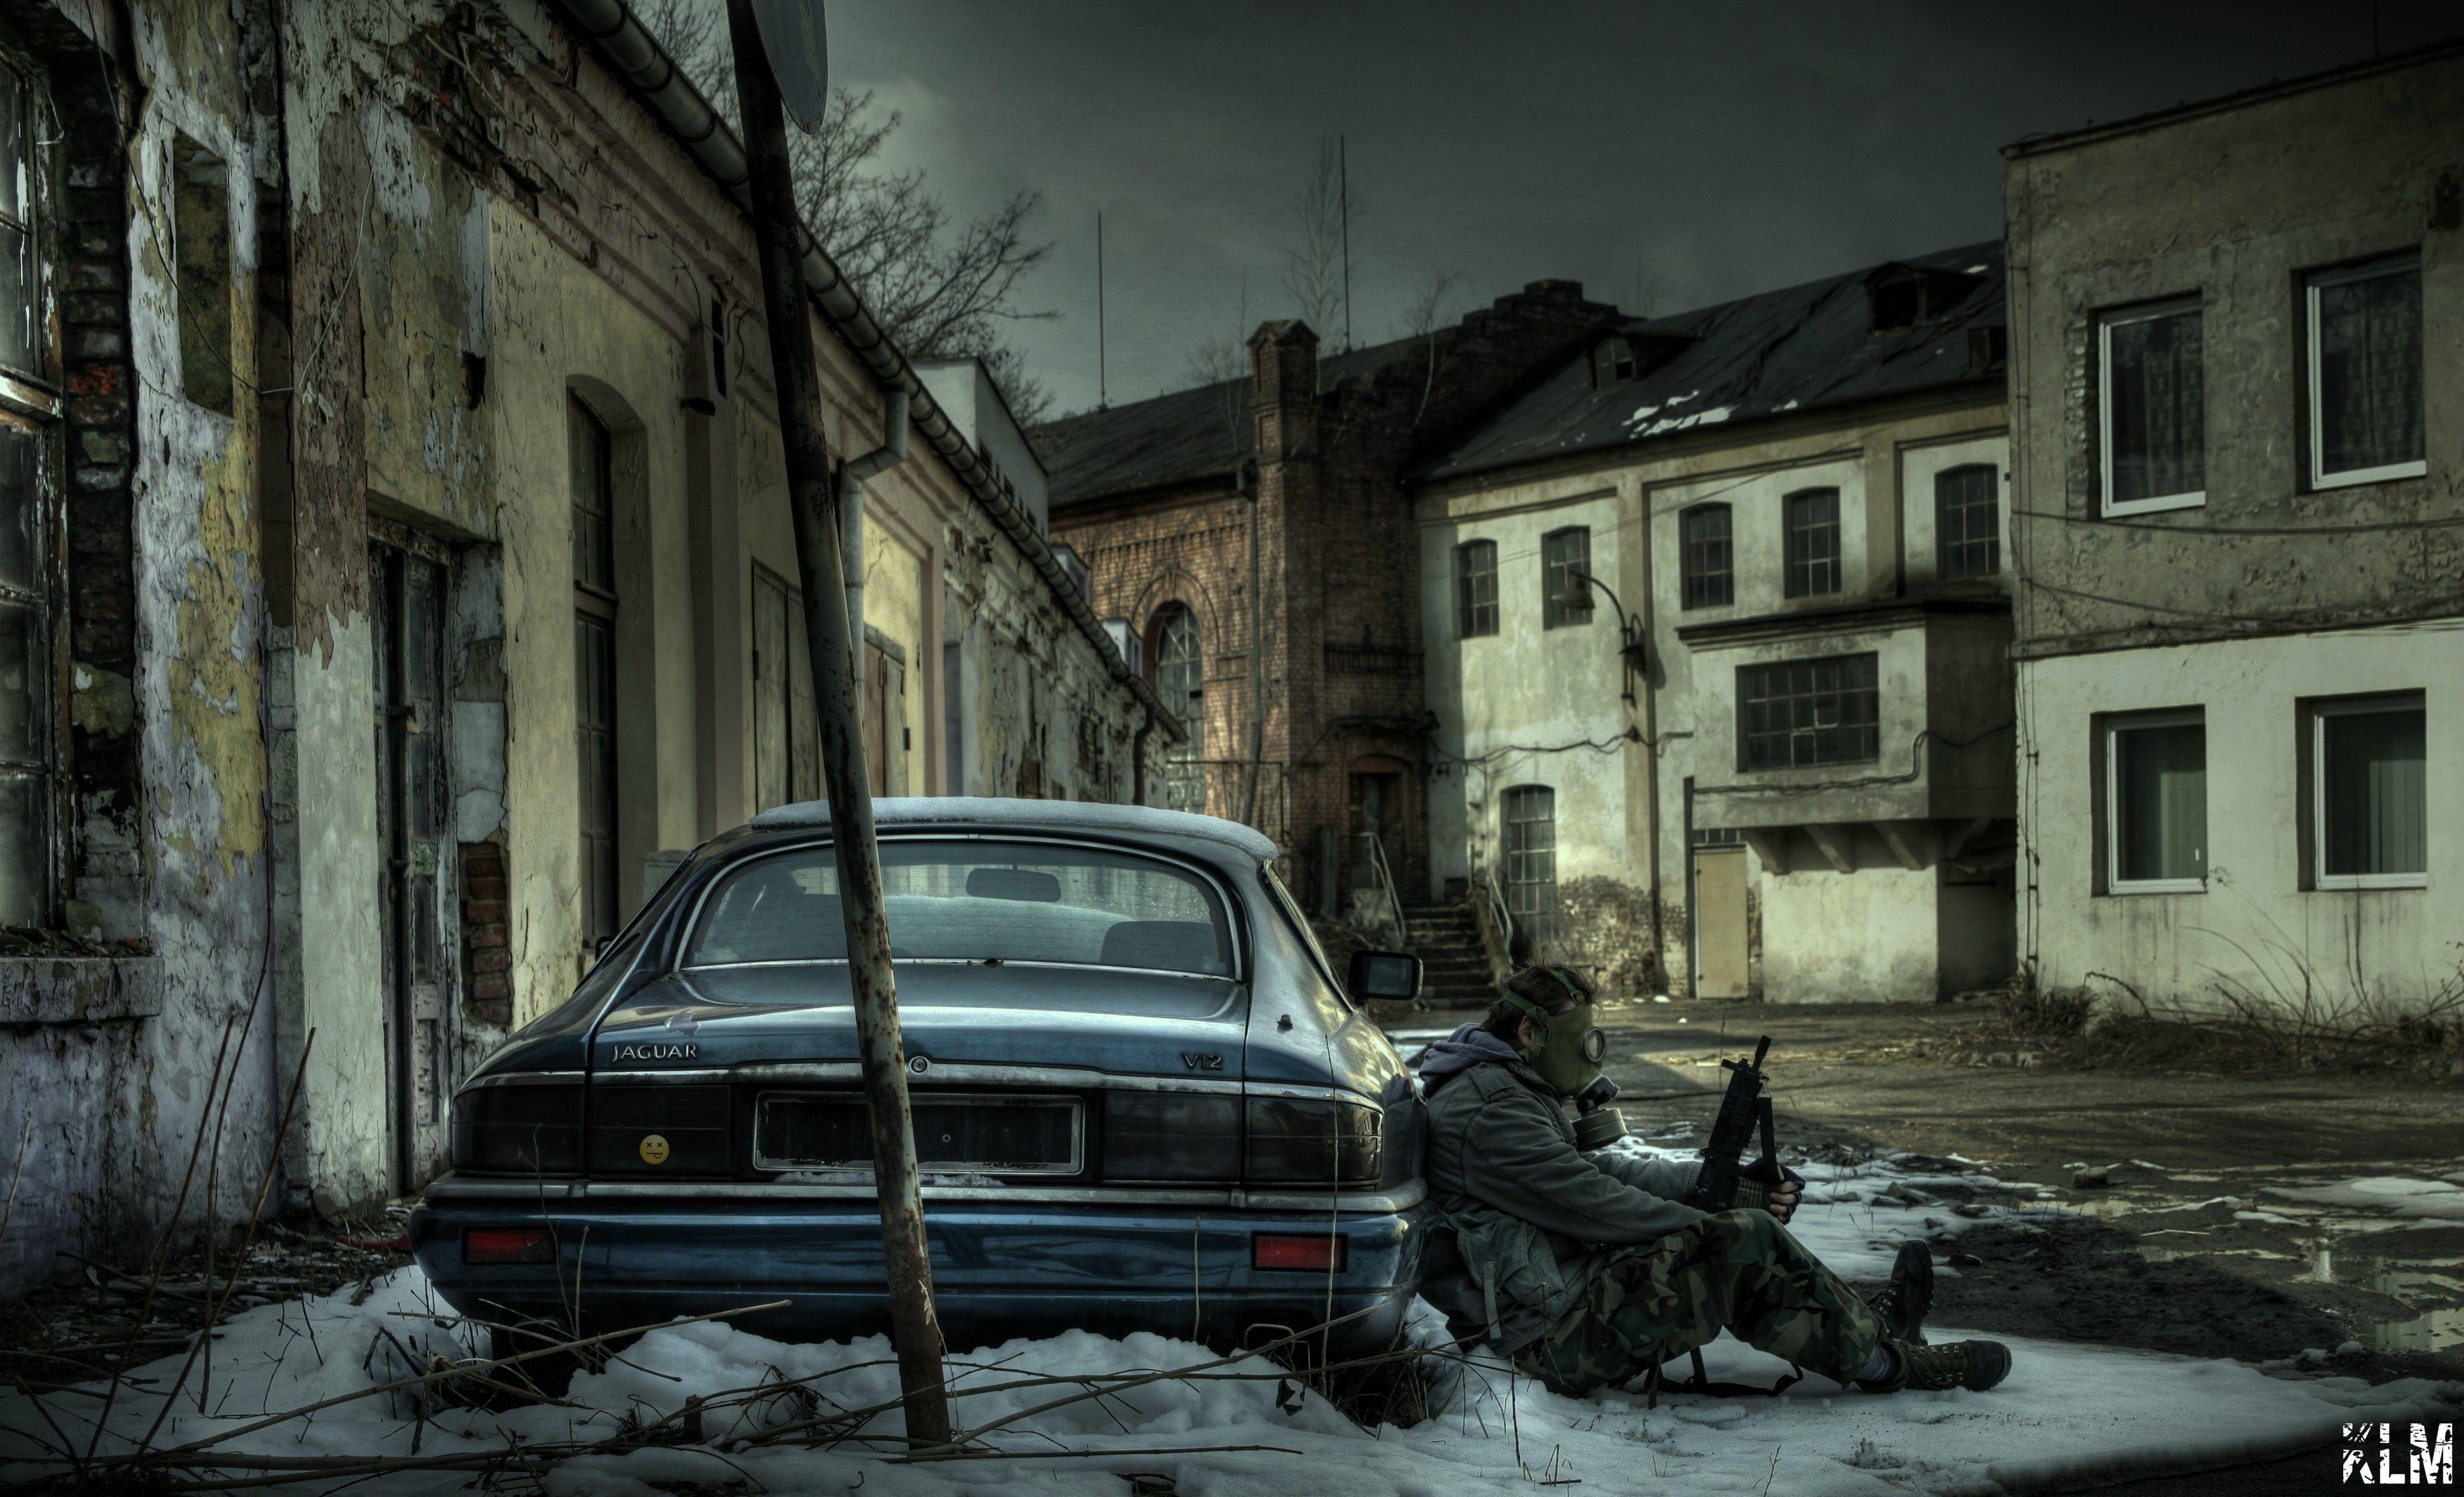 gas Masks, Abandoned, Poland, Urban Exploring, Urbex, Klamra